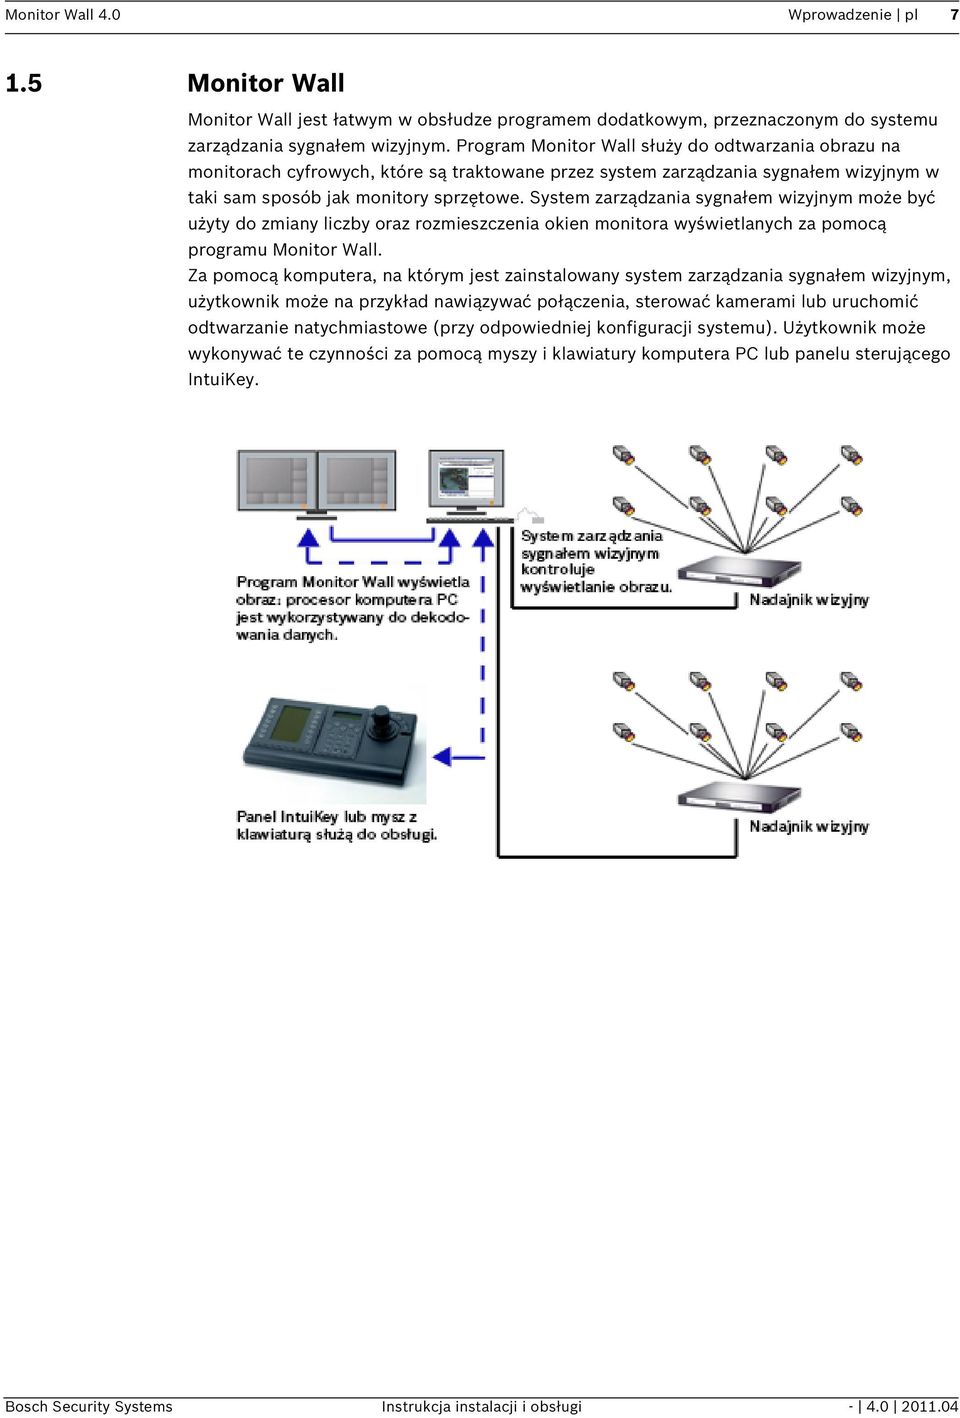 System zarządzania sygnałem wizyjnym może być użyty do zmiany liczby oraz rozmieszczenia okien monitora wyświetlanych za pomocą programu Monitor Wall.